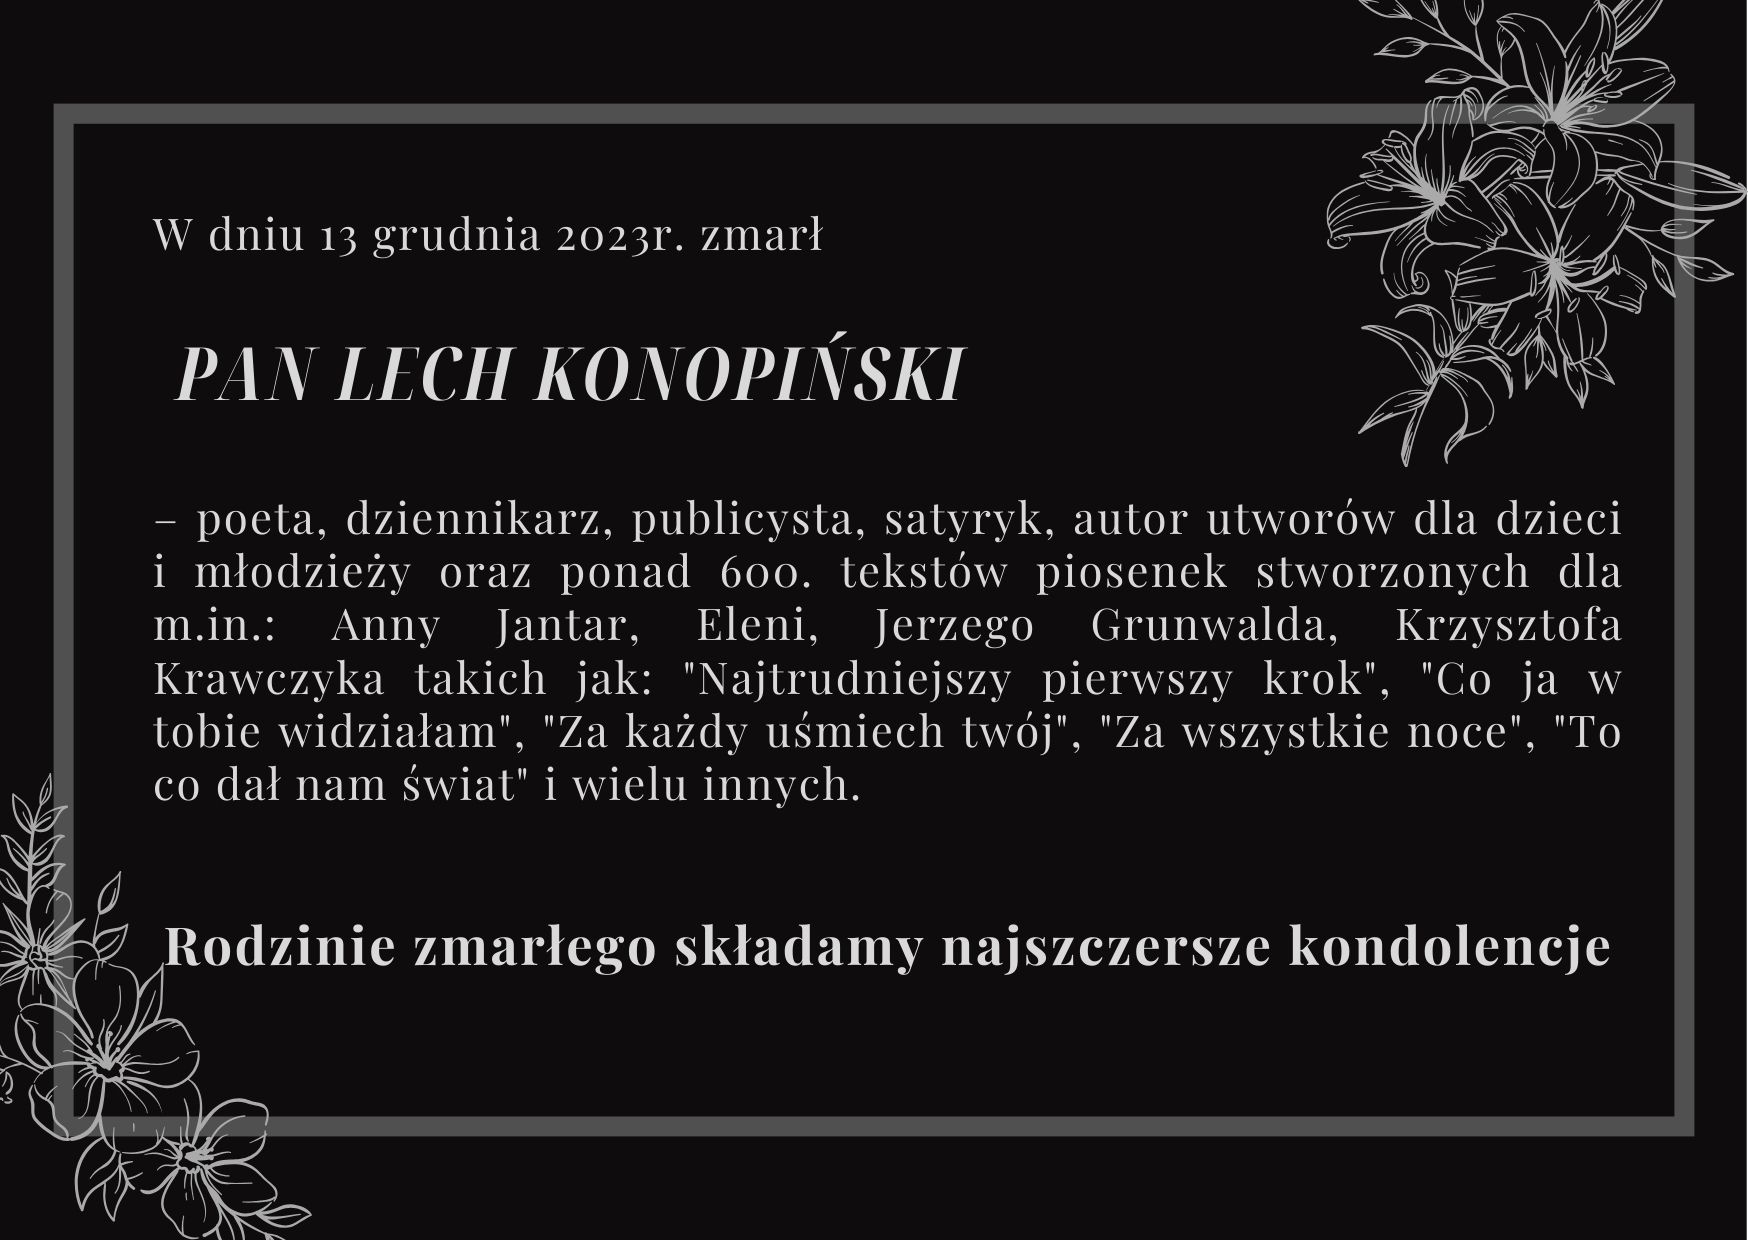 W dniu 13 grudnia 2023r. zmarł Pan Lech Konopiński poeta dziennikarz publicysta satyryk autor utworów dla dzieci i młodzieży oraz ponad 600. tekstów piosenek stworzonych dla m.in. Anny Janta